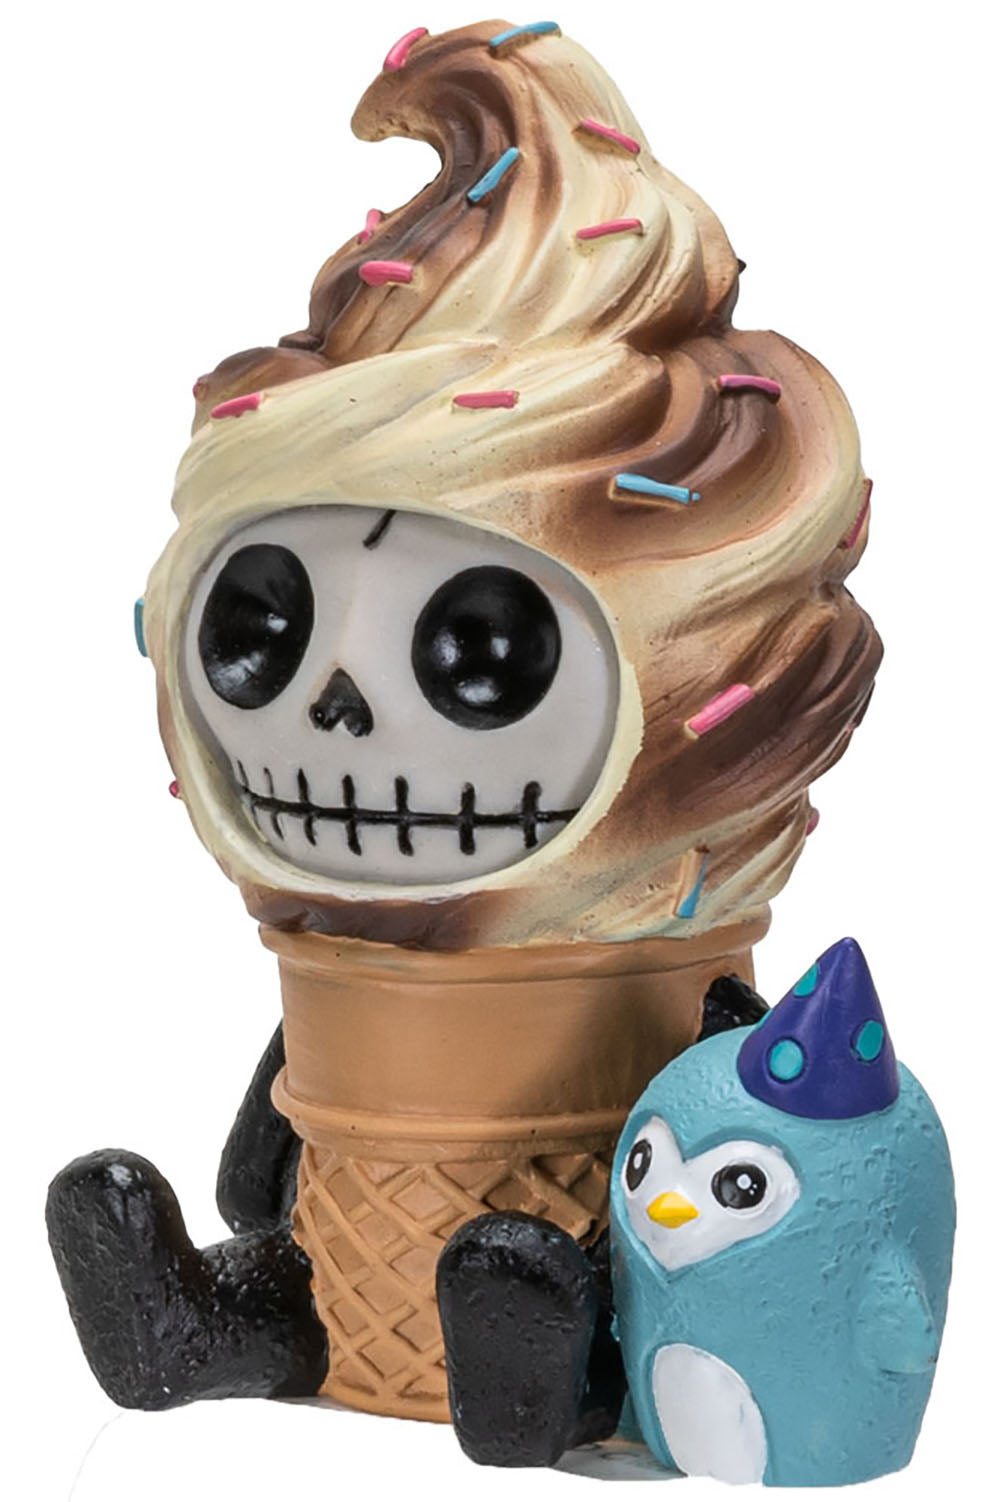 ice cream toy statue 